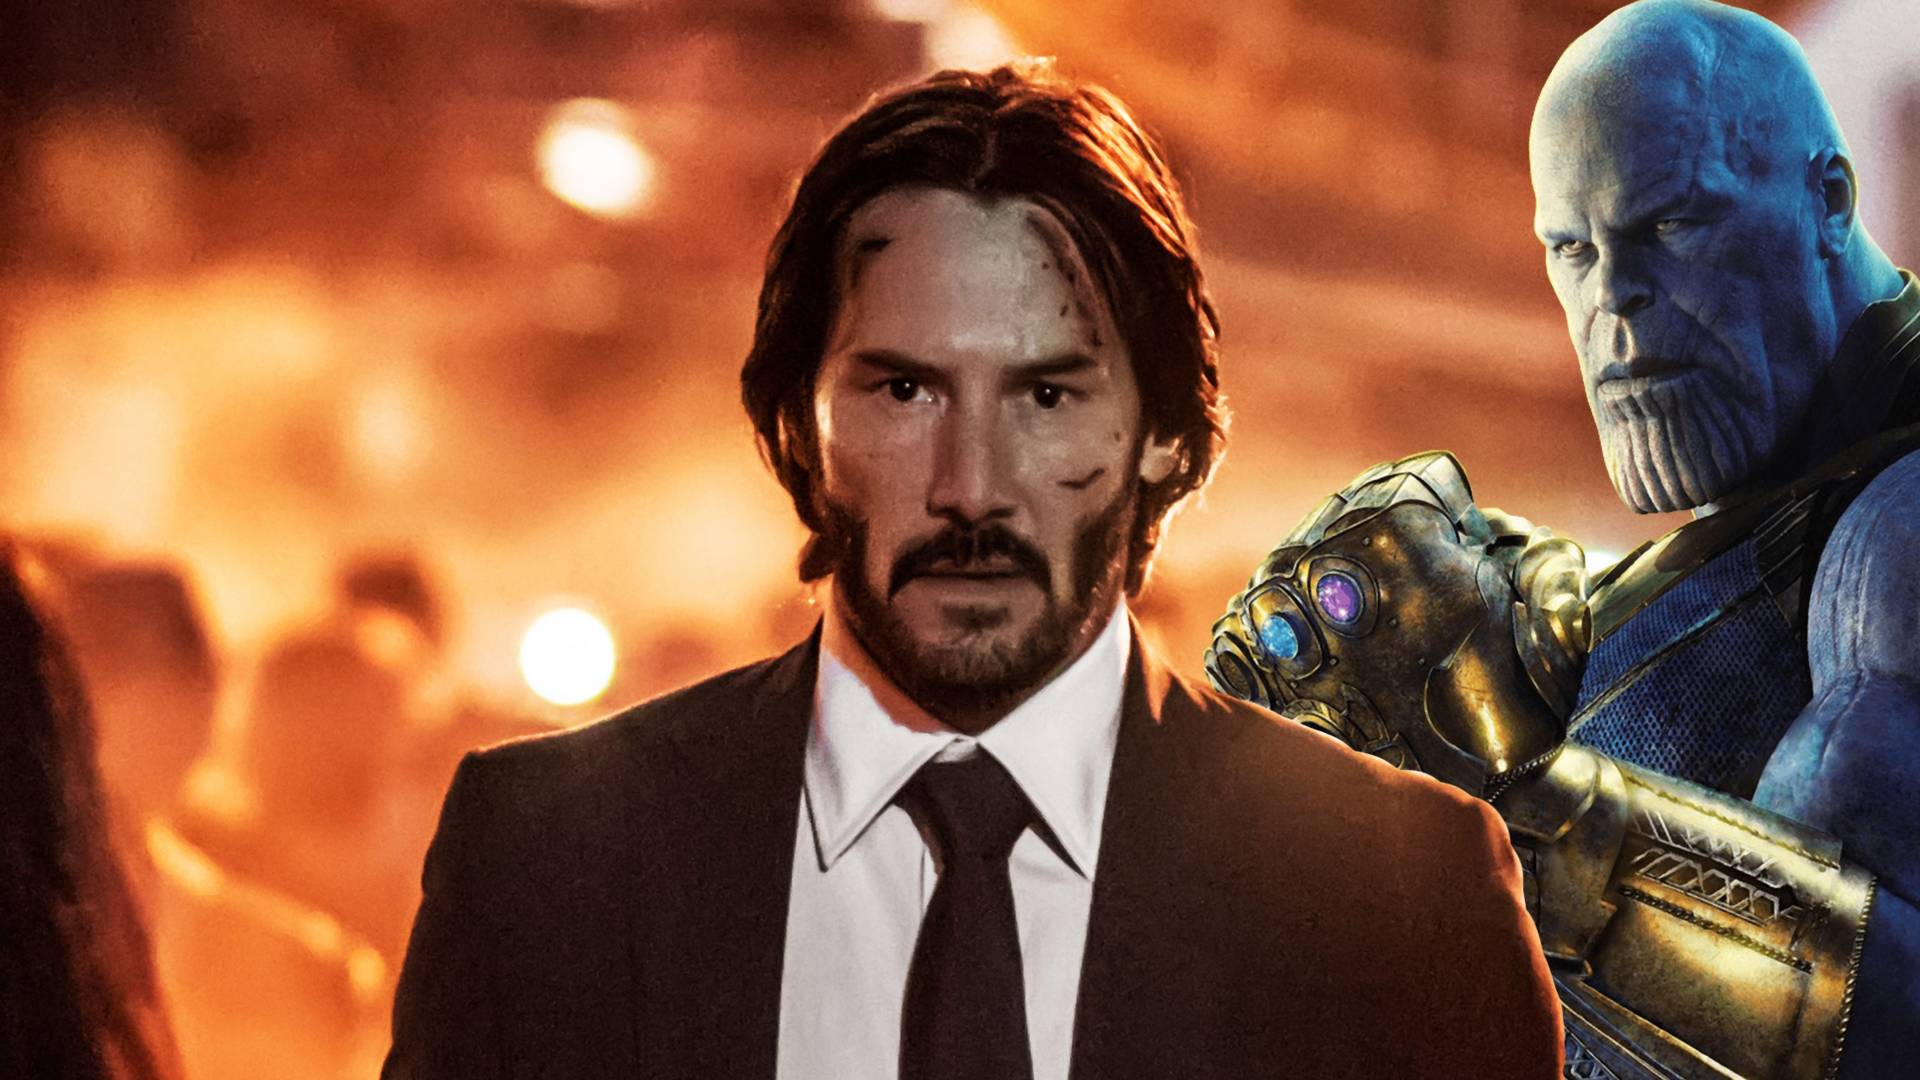 Keanu Reeves is csatlakozott a Bosszúállókhoz, Thanos retteghet - kép